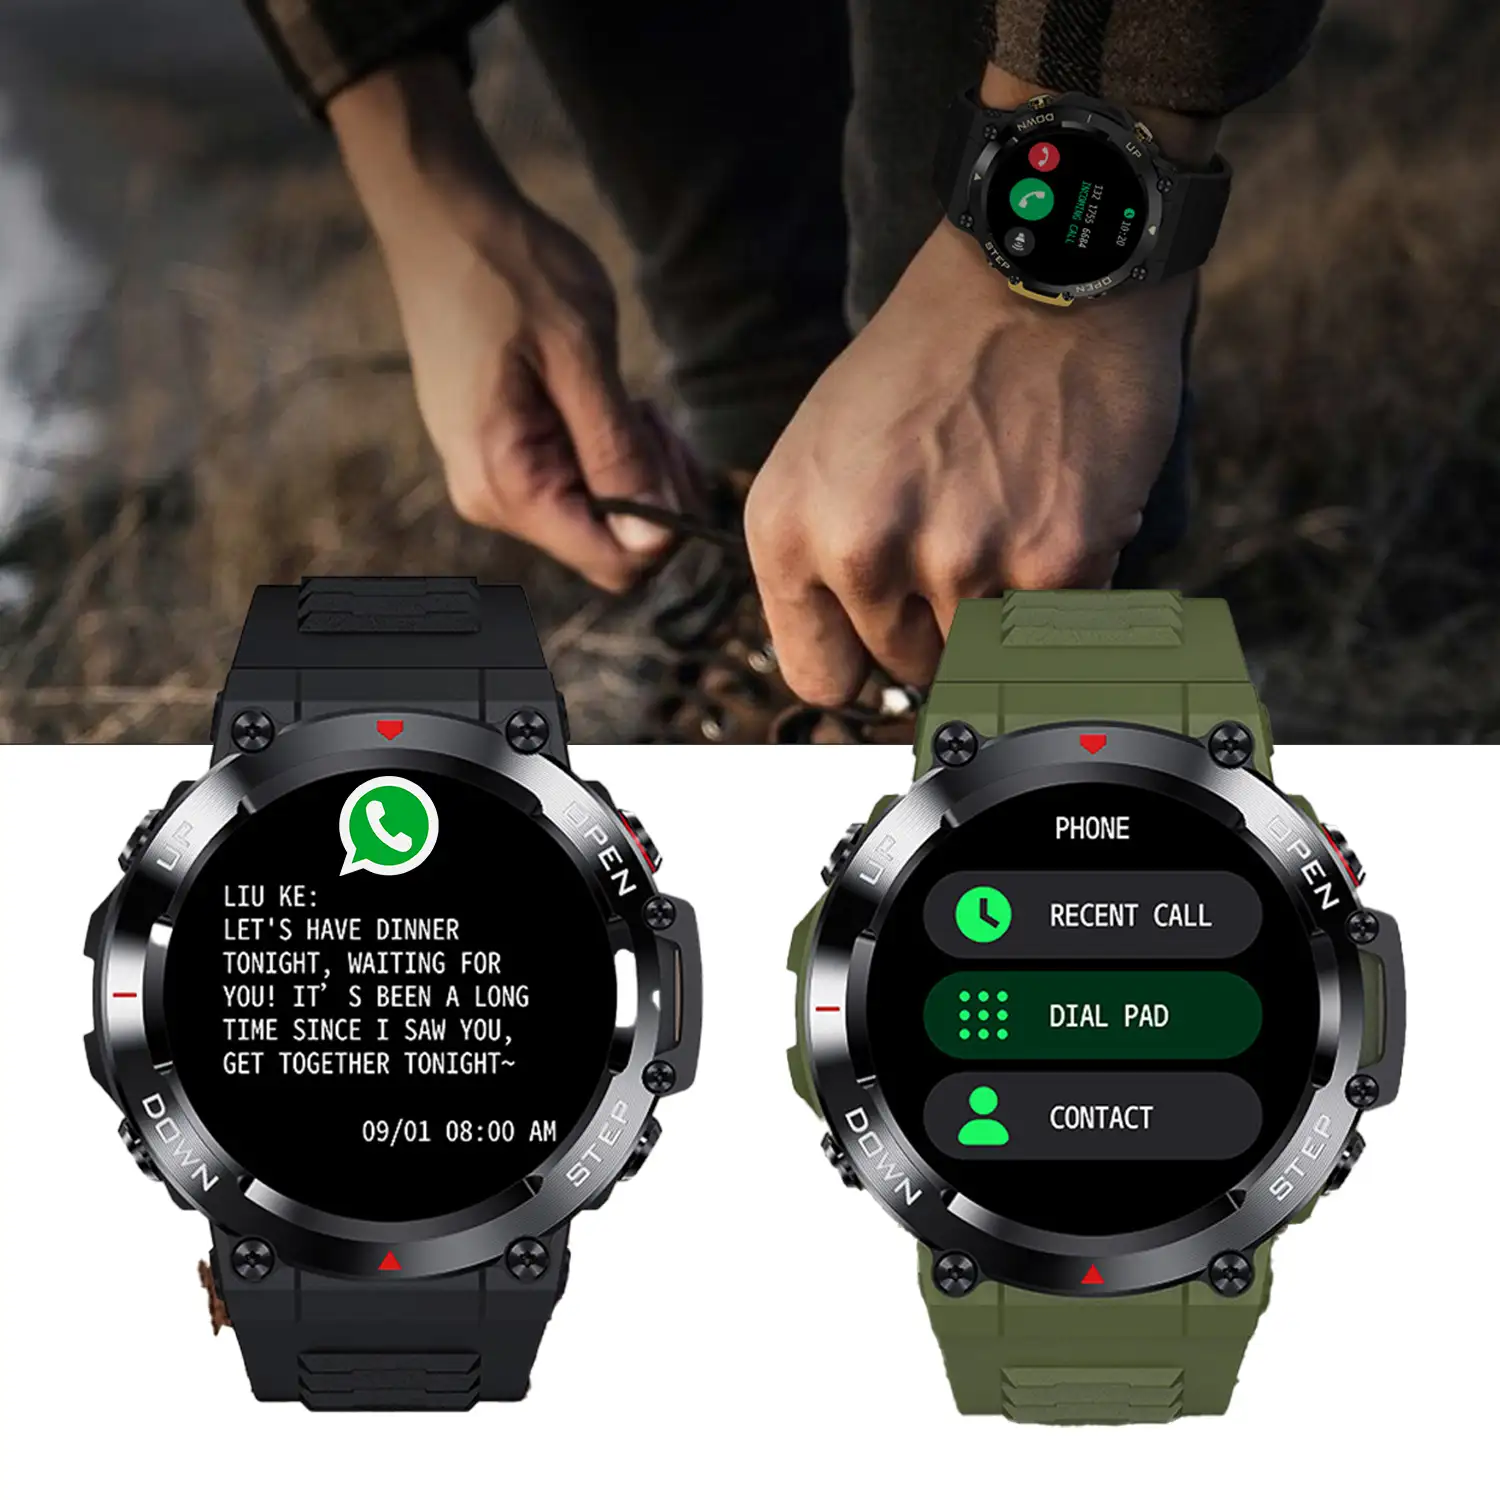 Smartwatch AK45 con monitor de tensión y cardiaco, información meteorológica y modos deportivos. Batería de 400mAh.